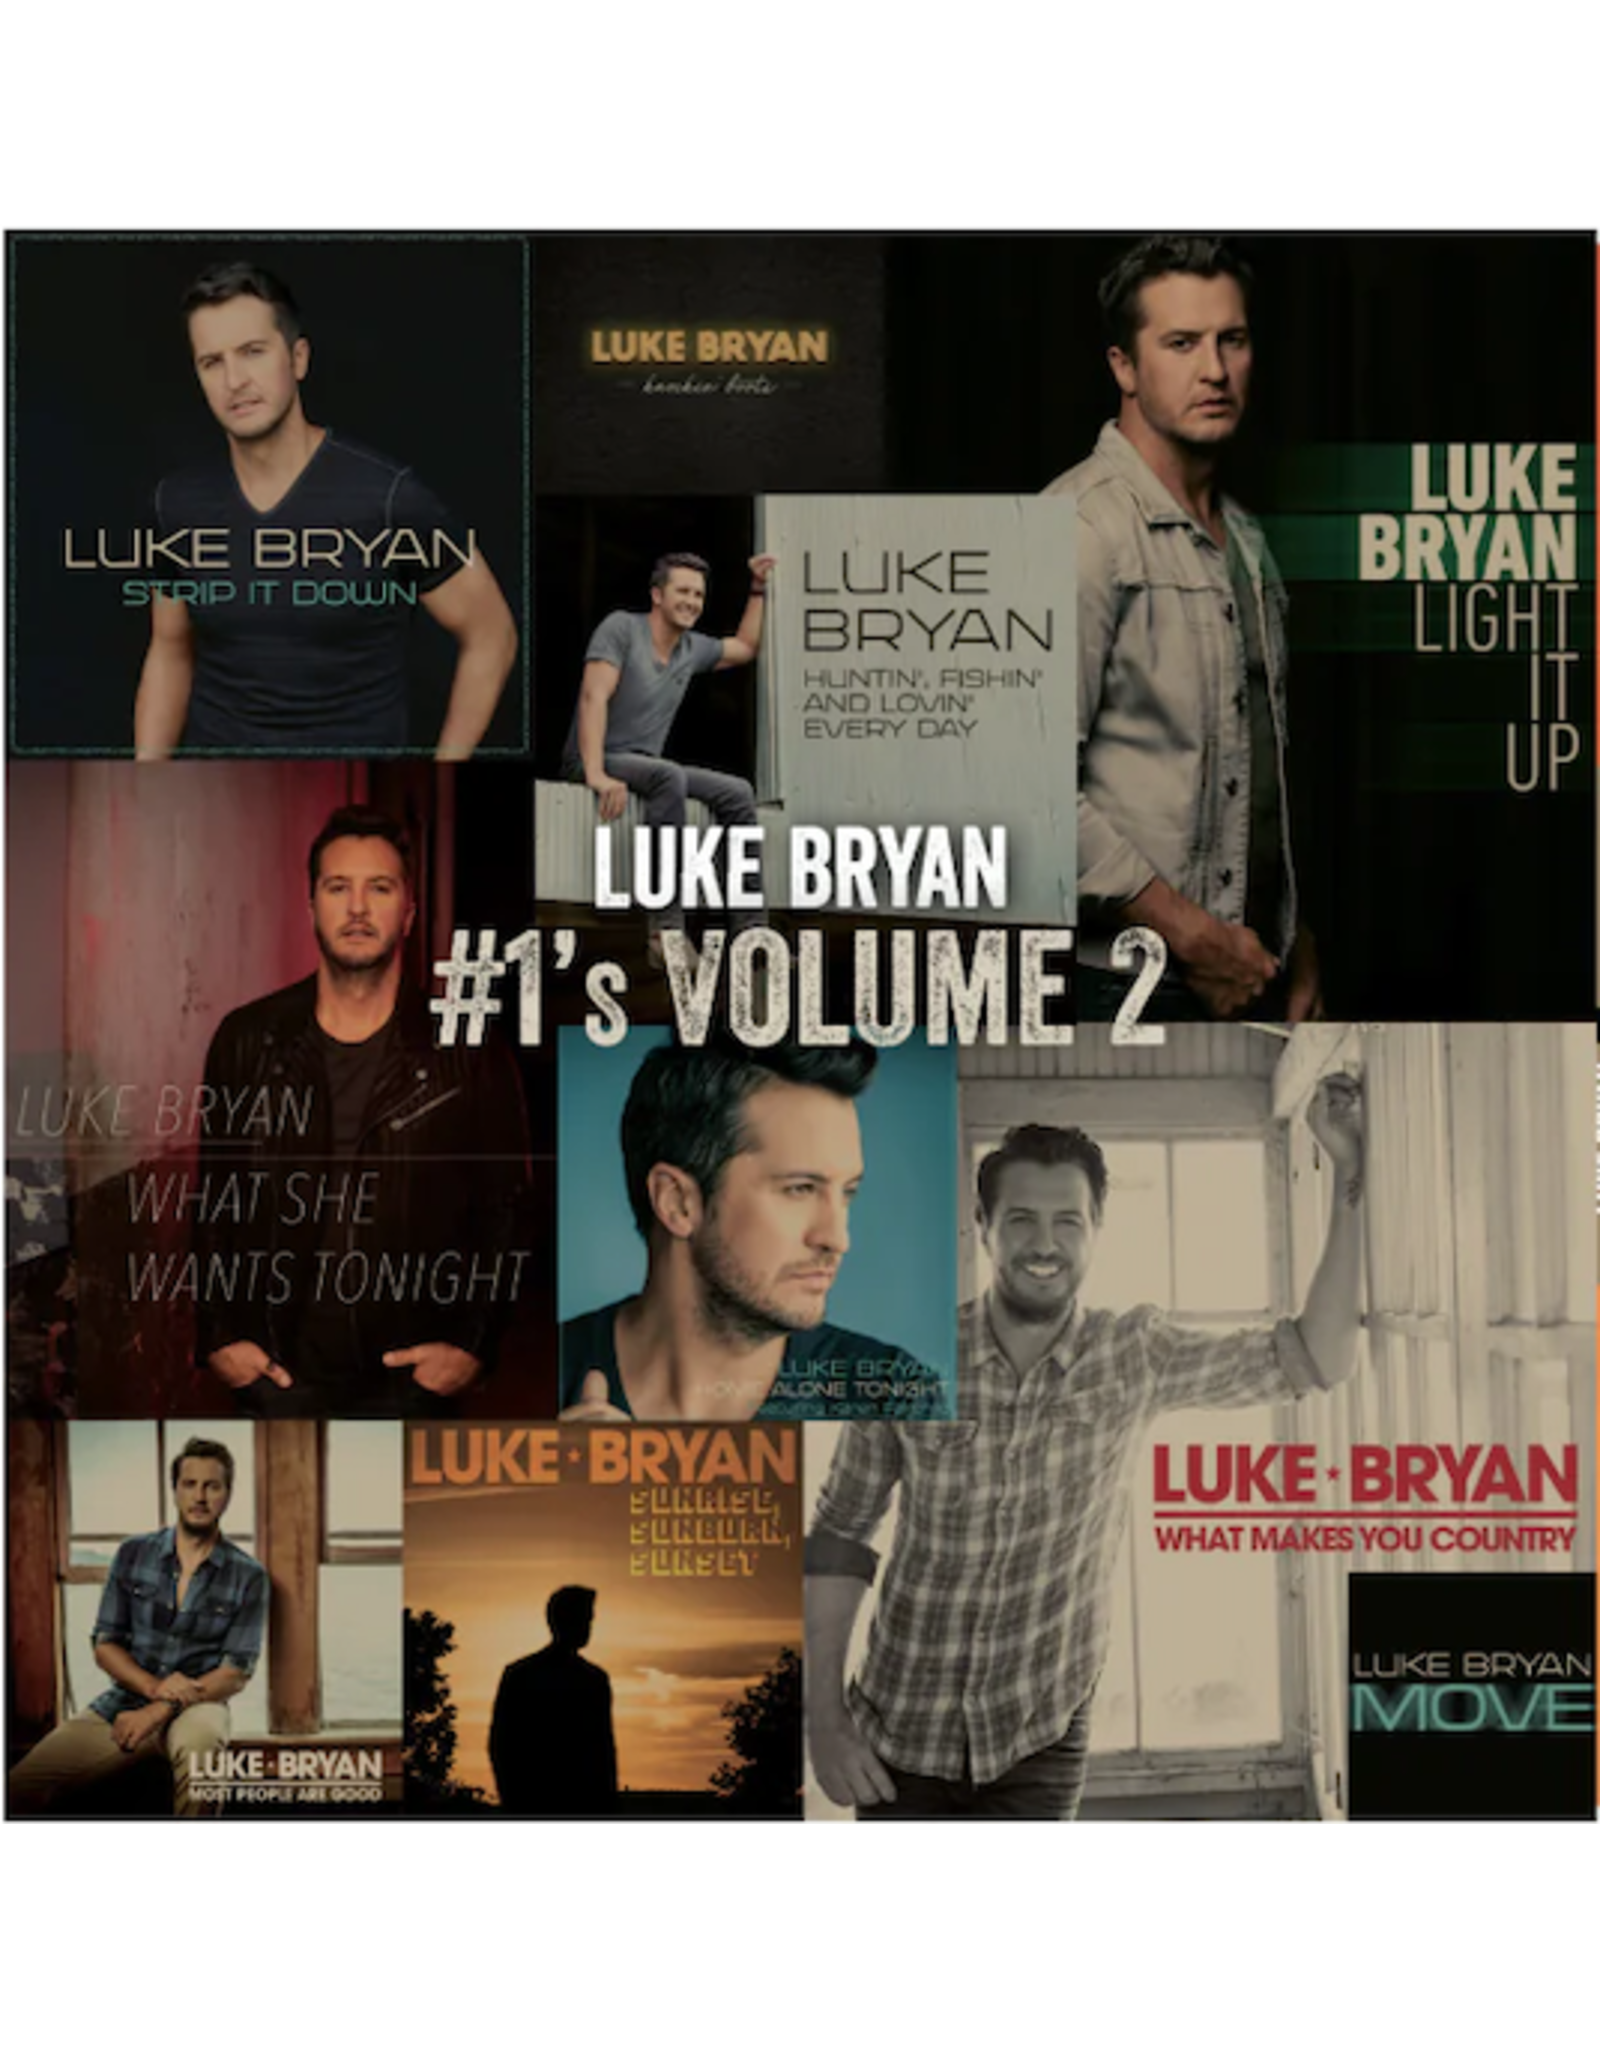 Luke Bryan - #1's Volume: 2 (Tangerine Vinyl)